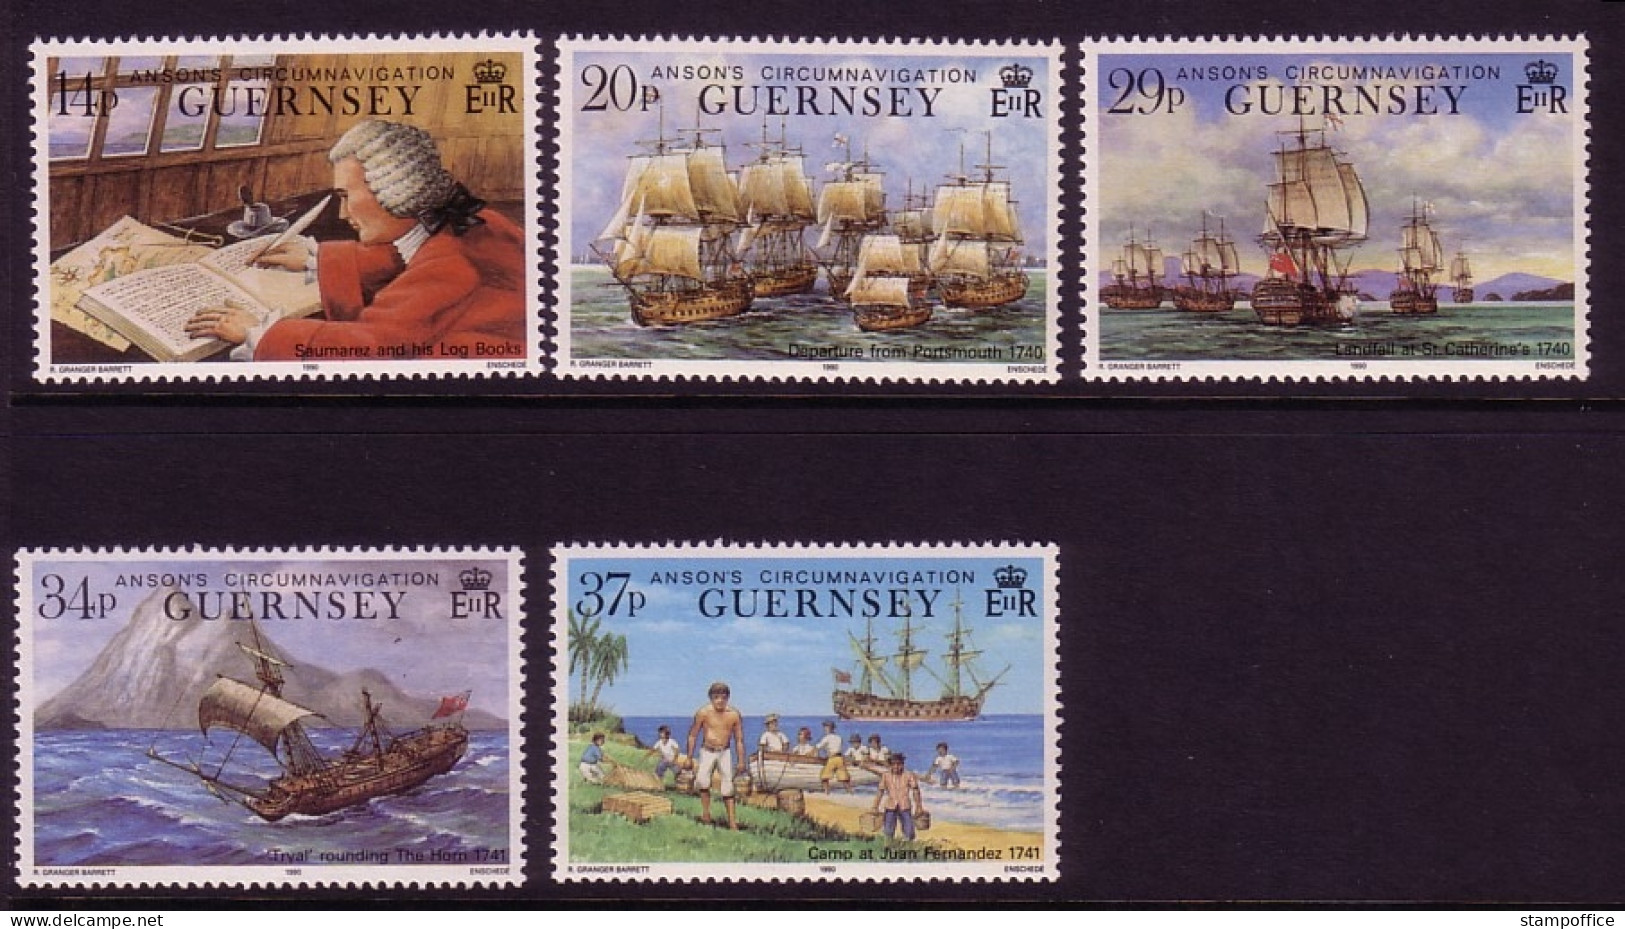 GUERNSEY MI-NR. 492-496 POSTFRISCH(MINT) 250. JAHRESTAG WELTUMSEGLUNG LORD ANSONS FLOTTE 1990 - Guernsey